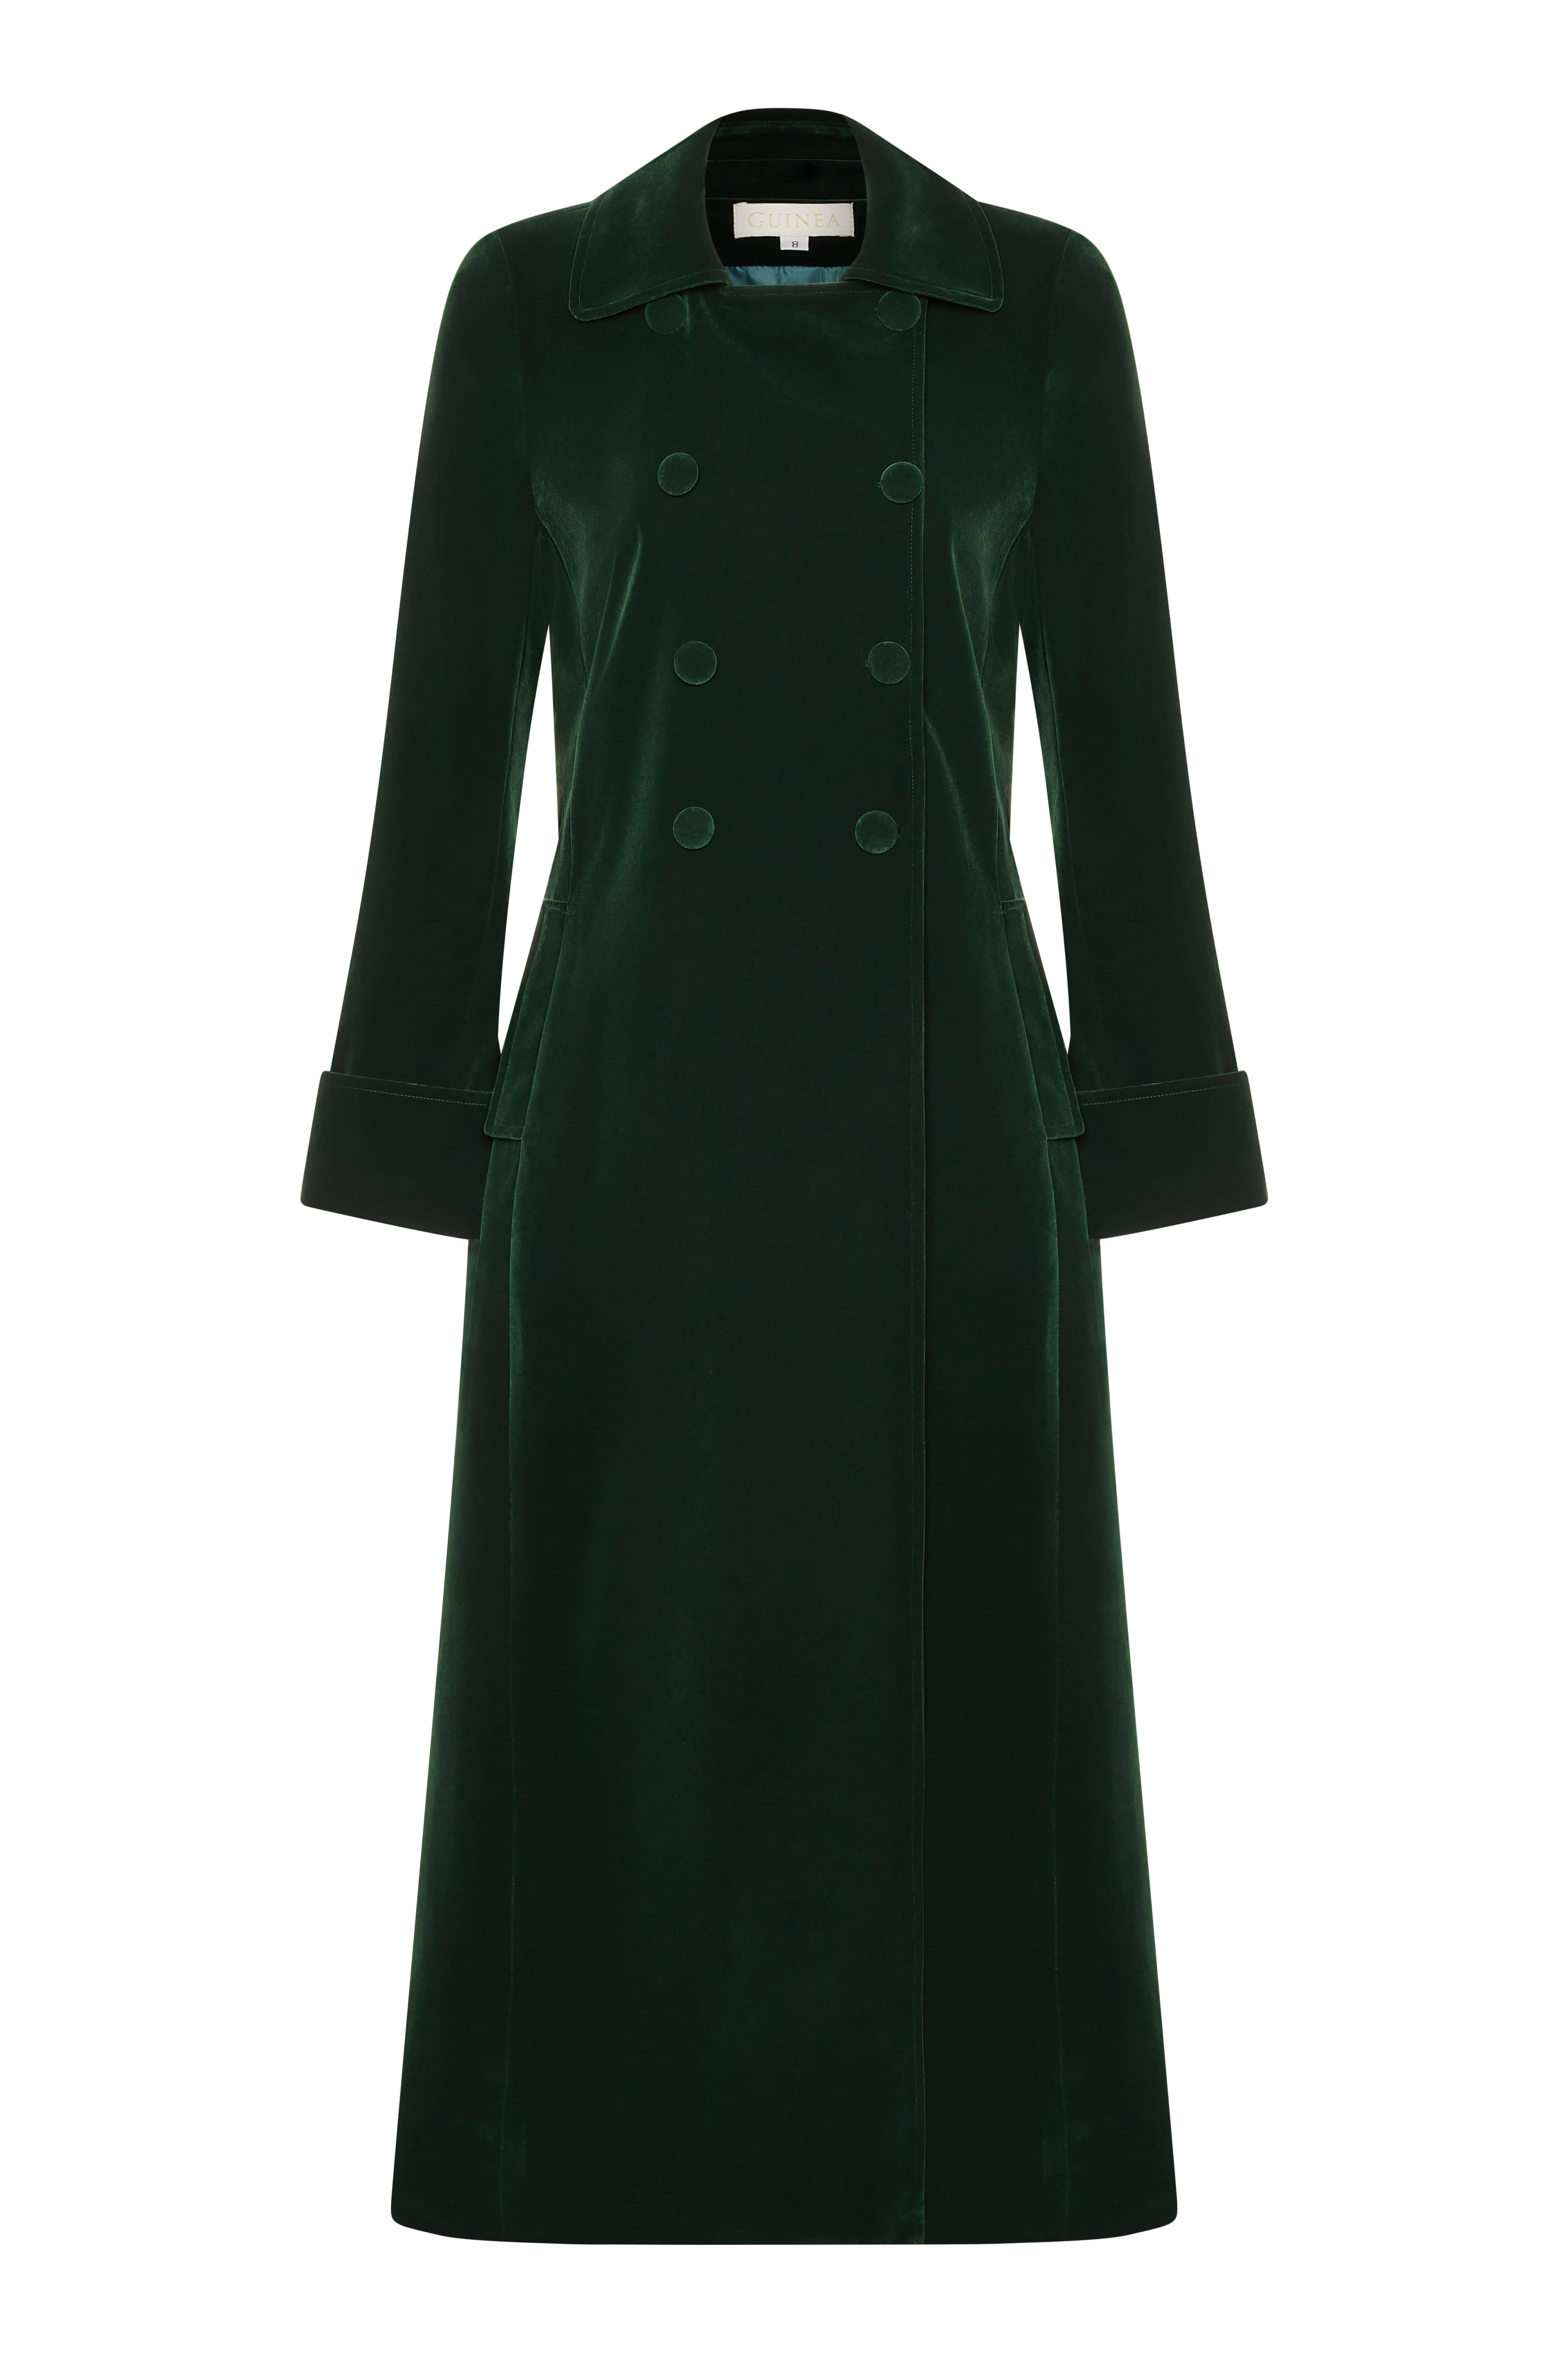 Women’s Long Green Velvet Coat - Boho Glamour Extra Large Guinea